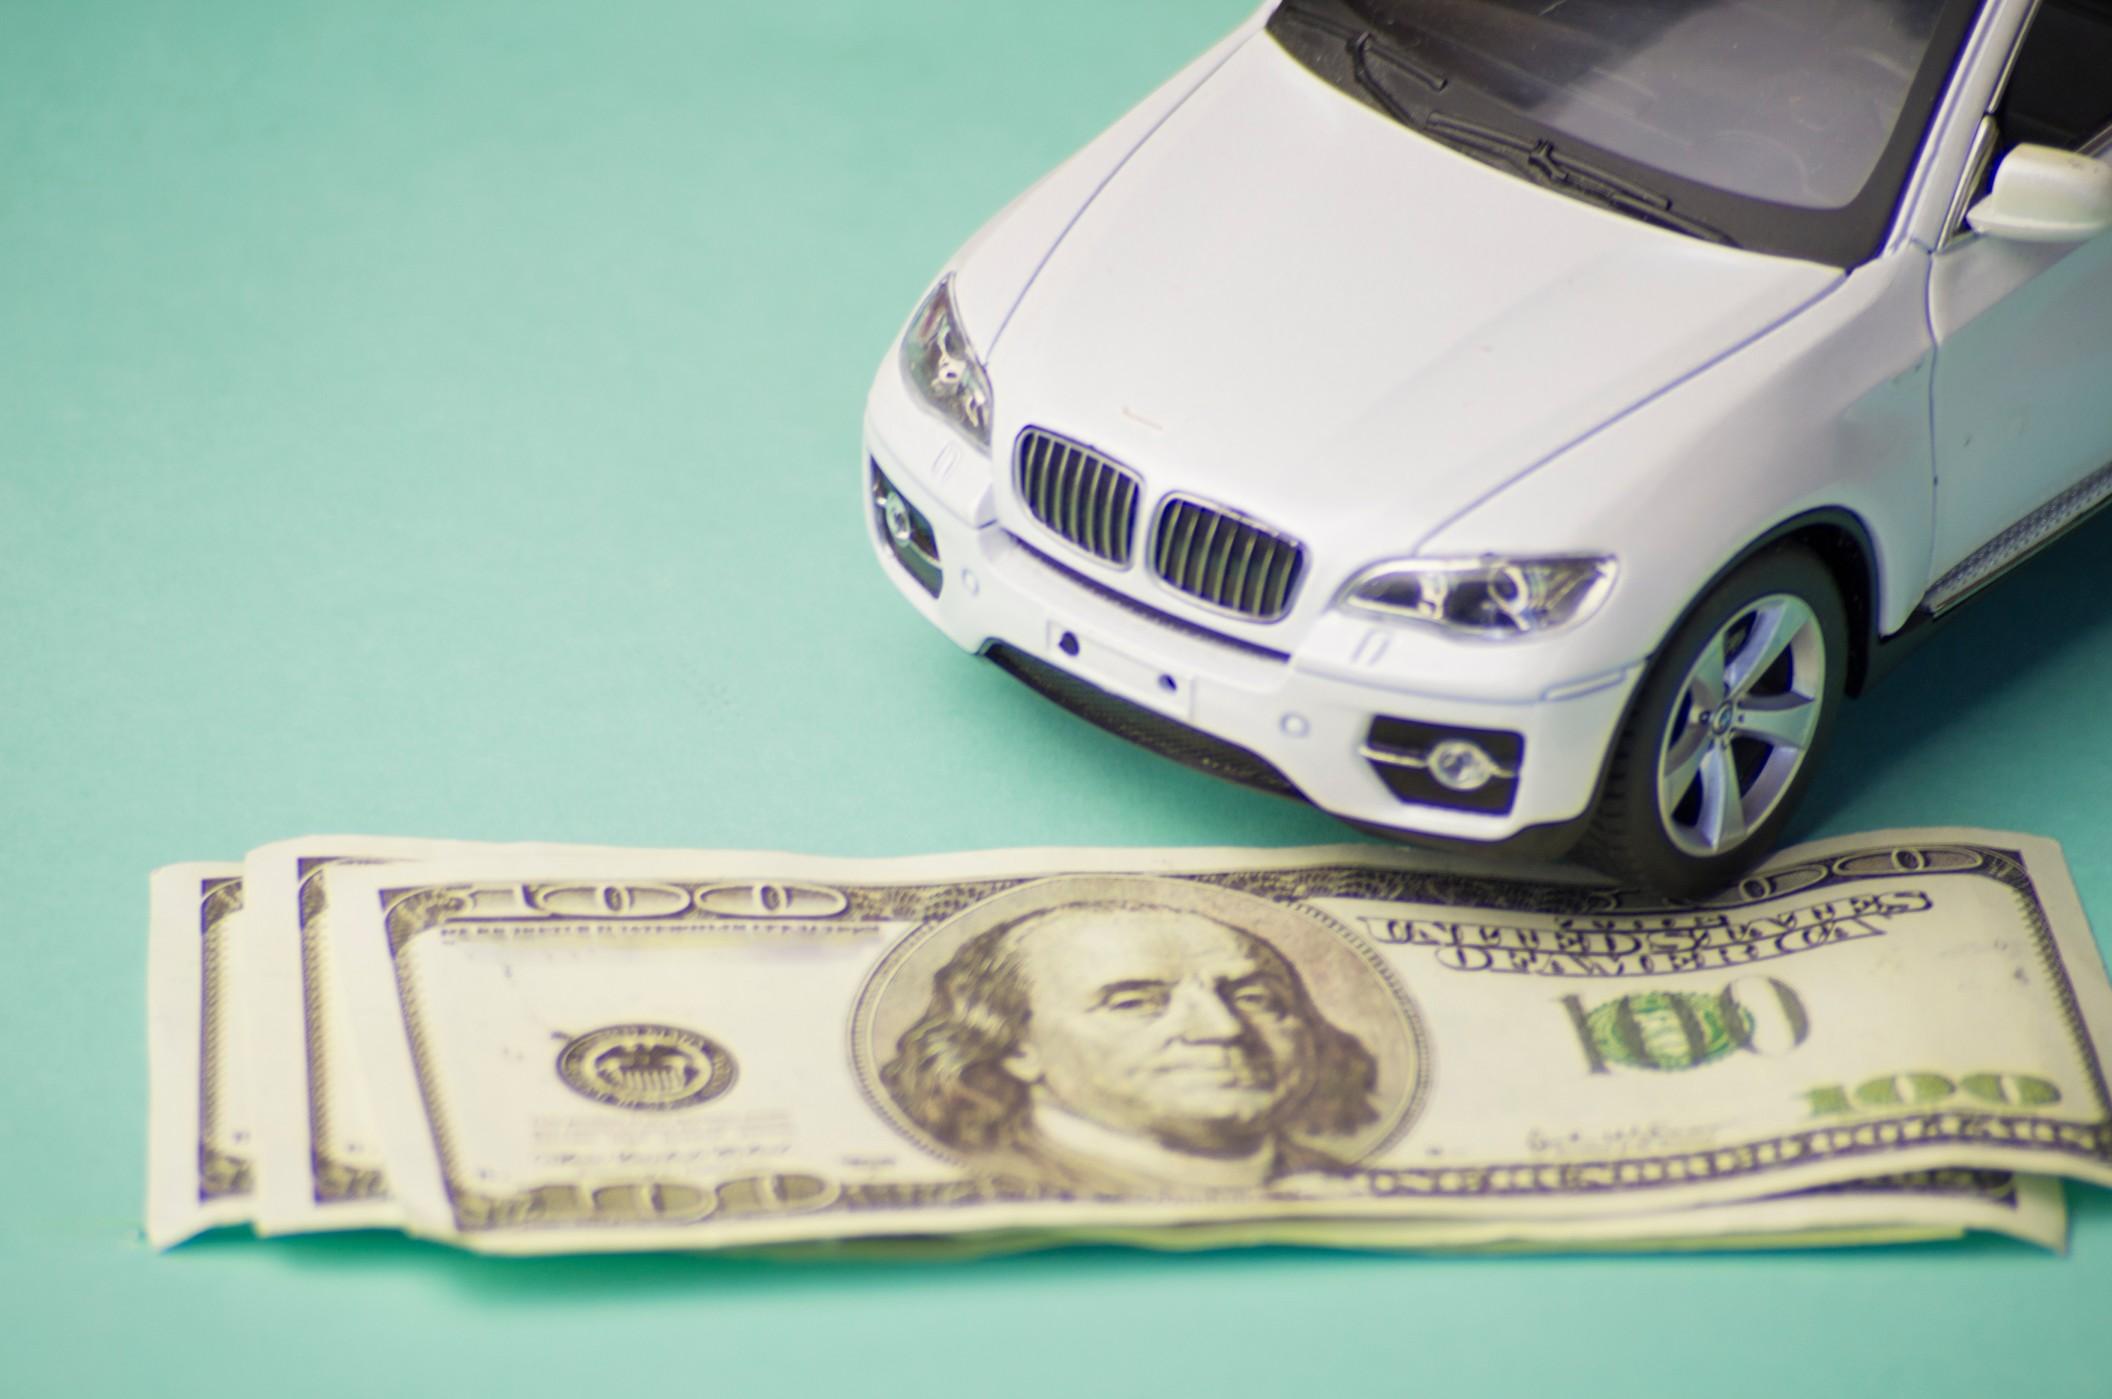 佛罗里达州保险代理人名叫维克多单叶概述了一些廉价的汽车保险技巧。